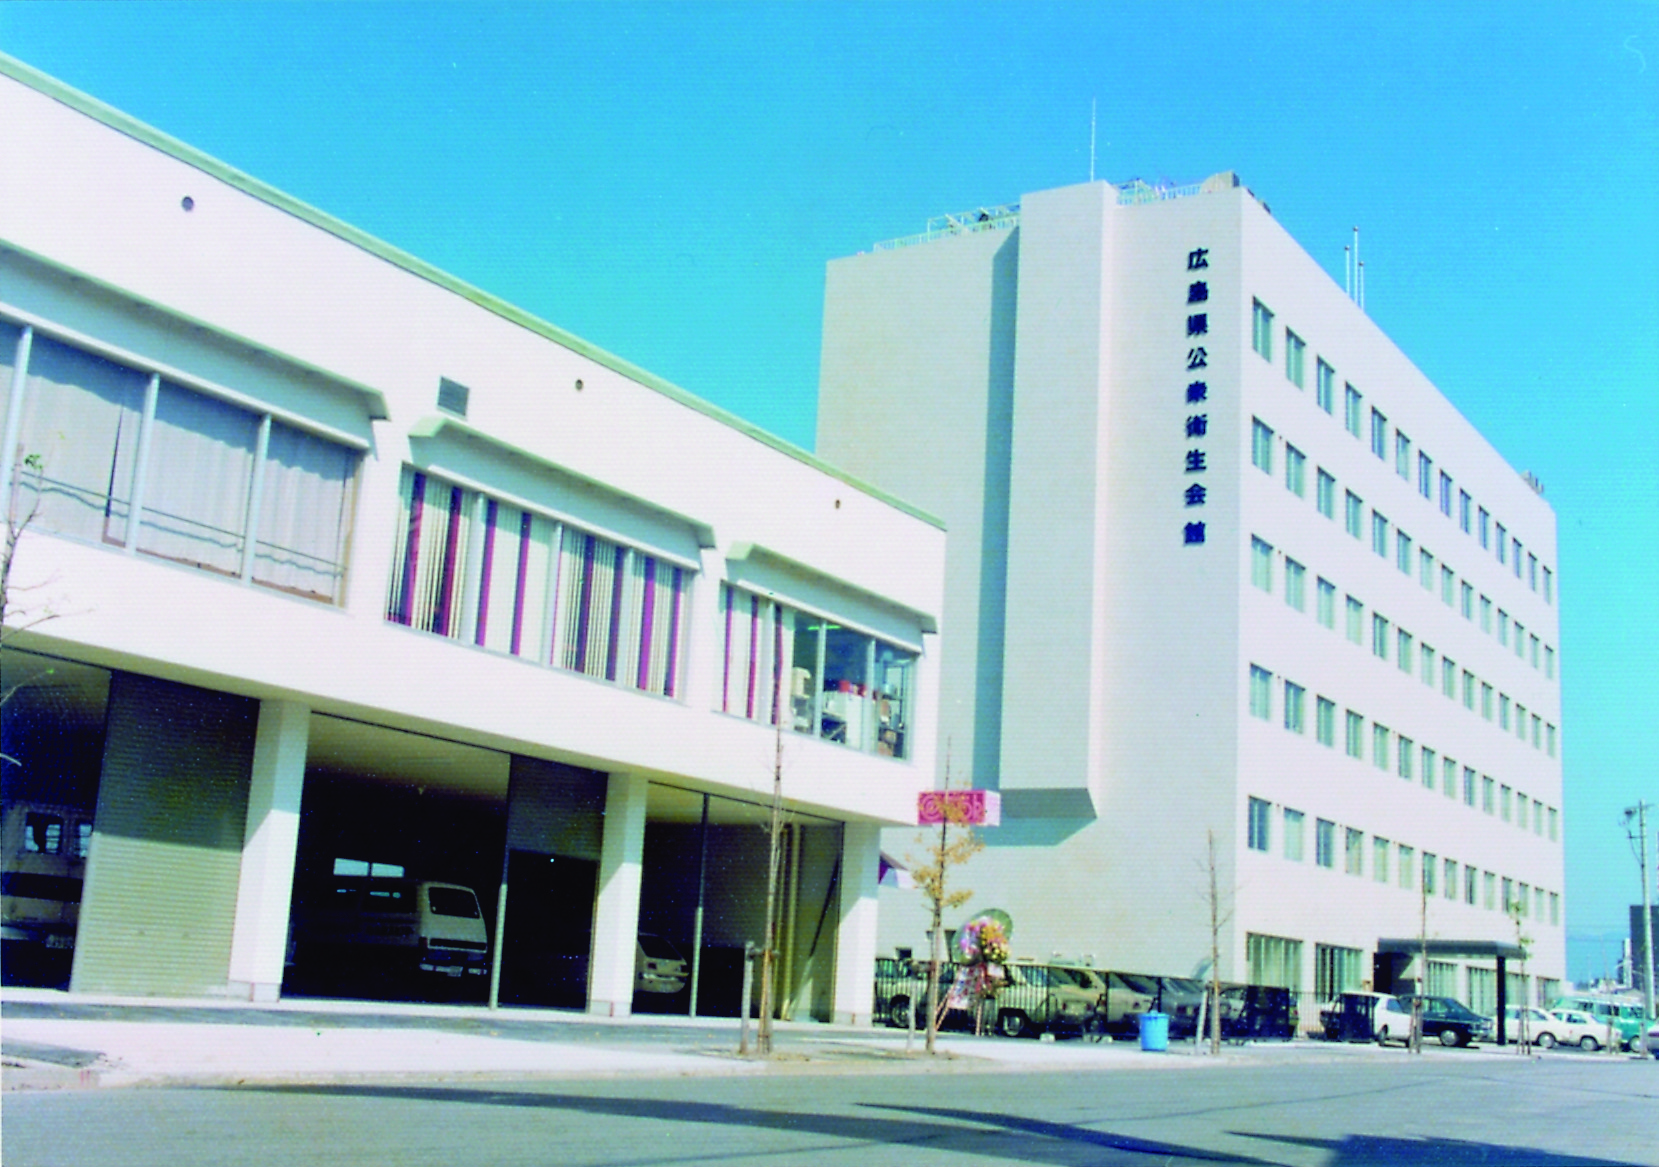 広島県公衆衛生会館（広島市中区広瀬北町）および別館が竣工し、事務所を移転